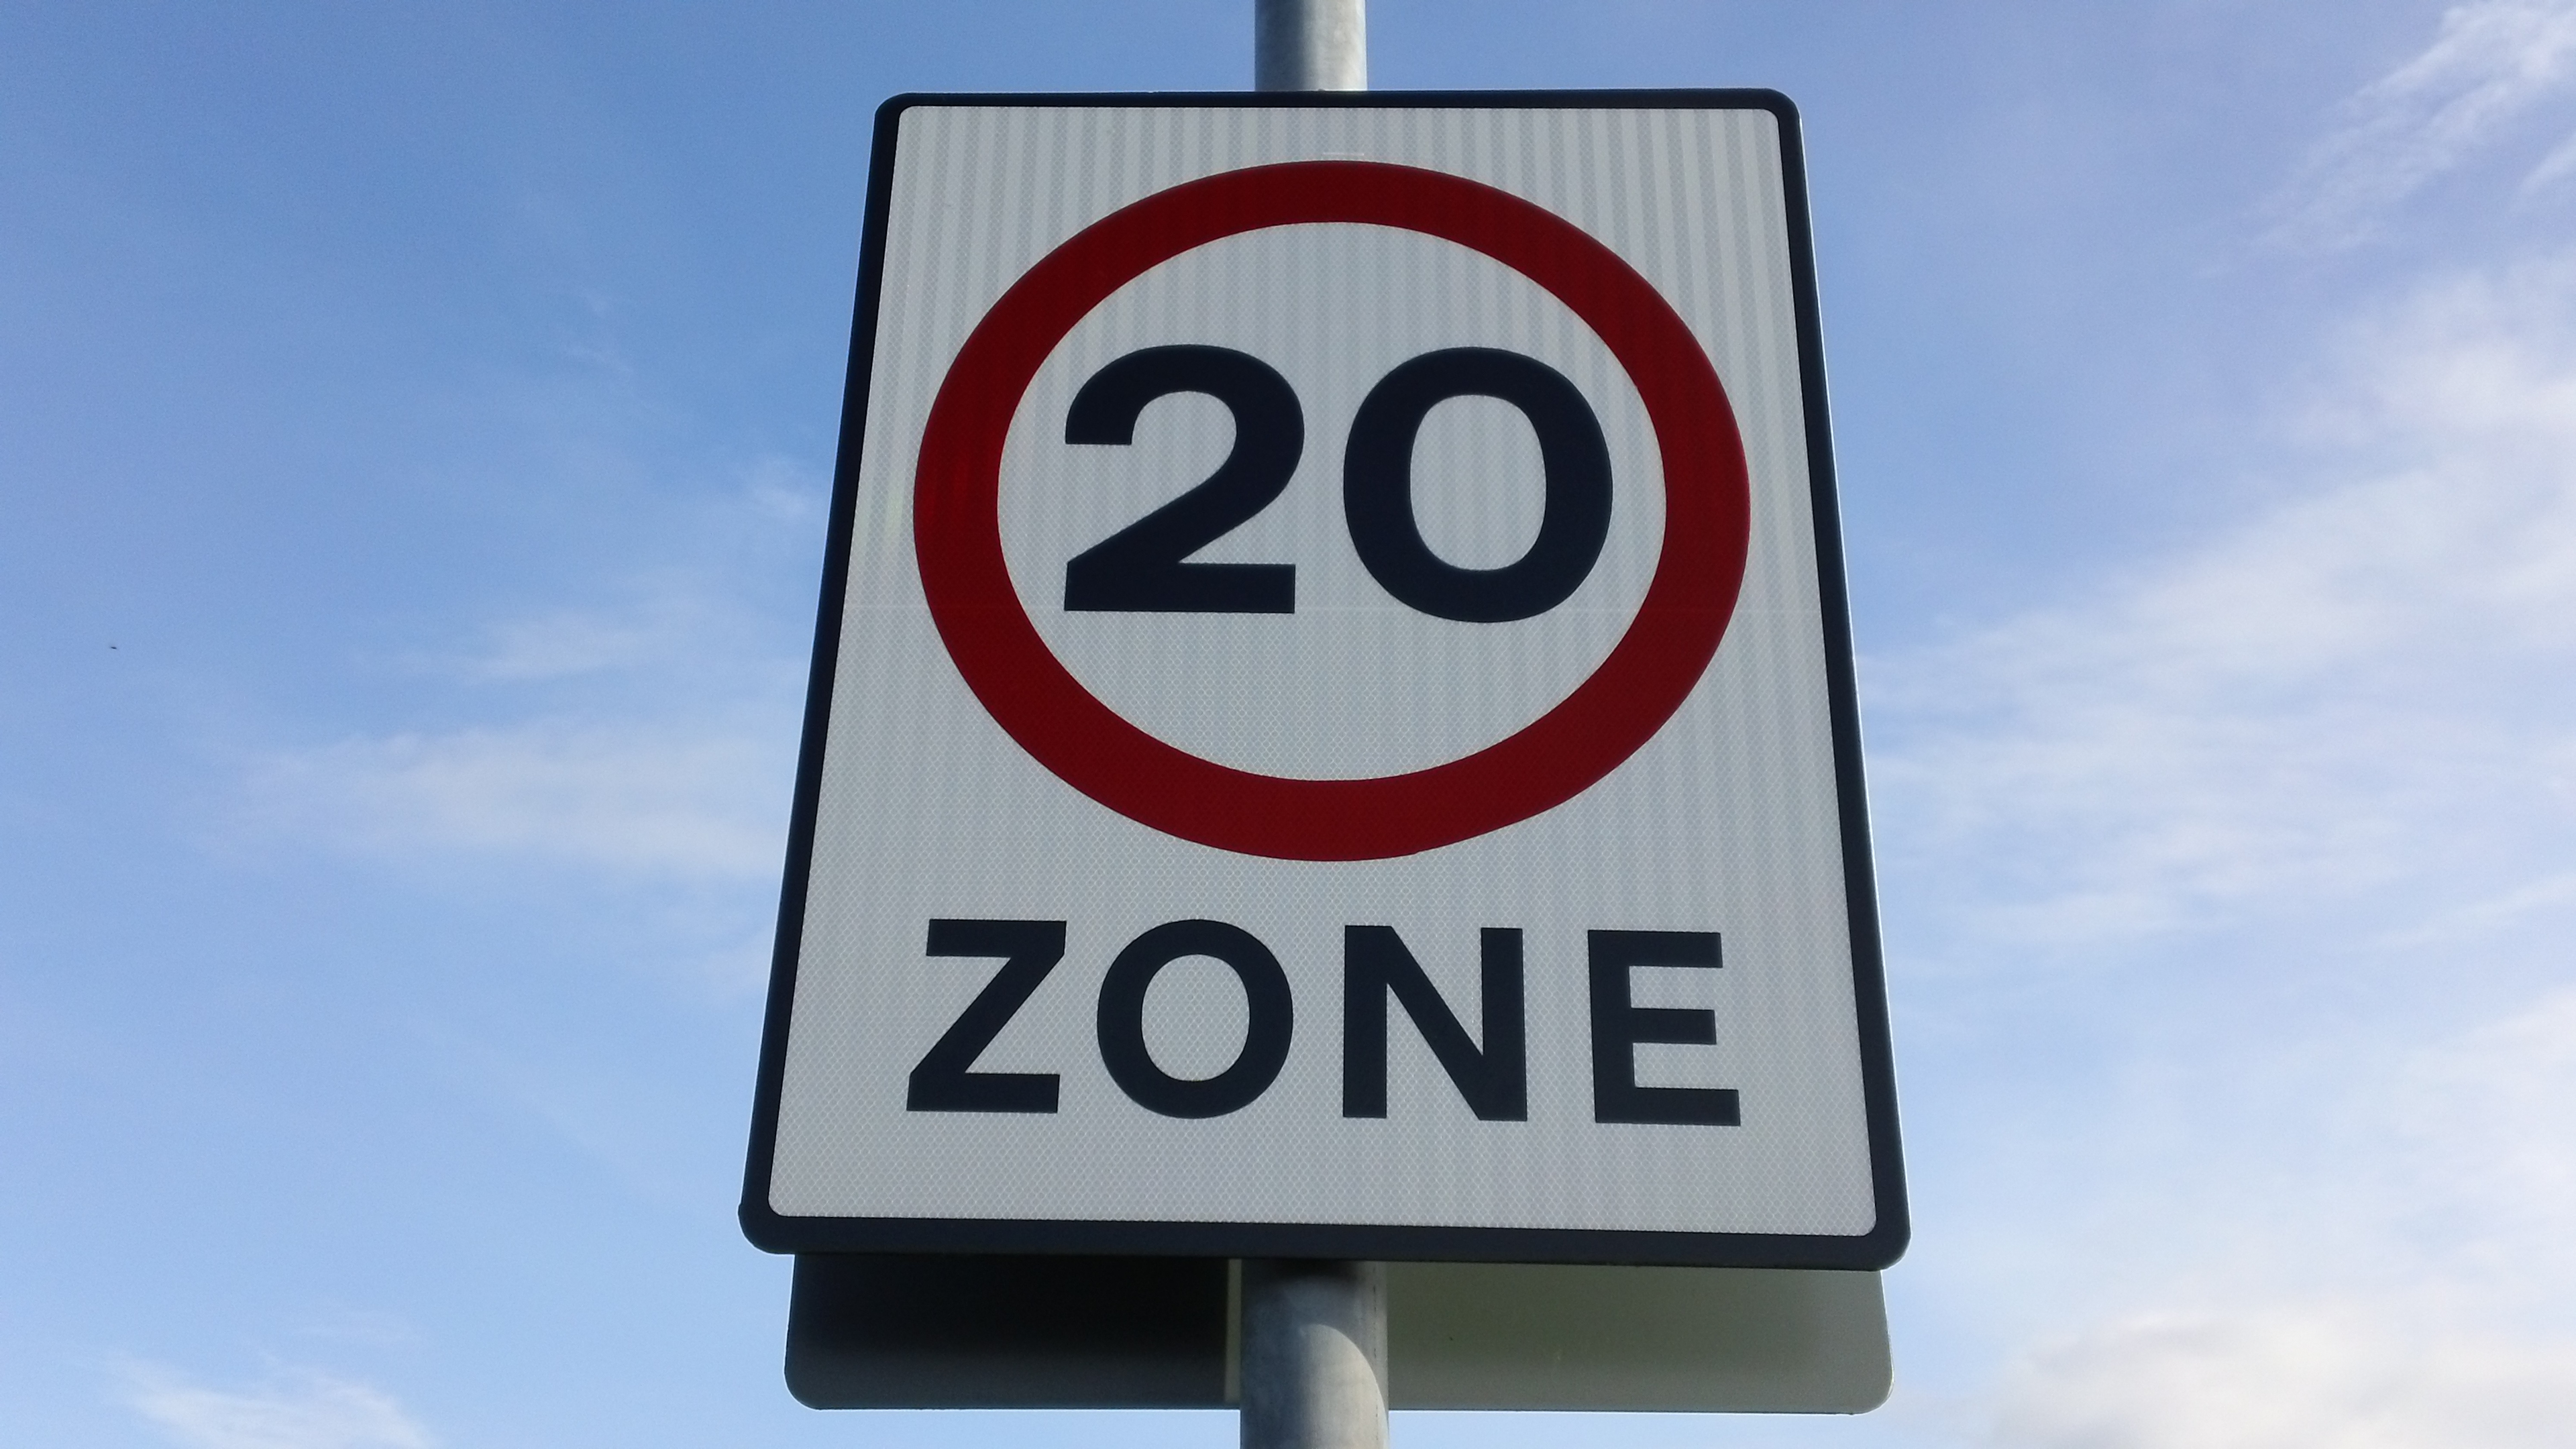 Wales wird auf den meisten gesperrten Straßen eine Standardgeschwindigkeitsbegrenzung von 20 Meilen pro Stunde einführen